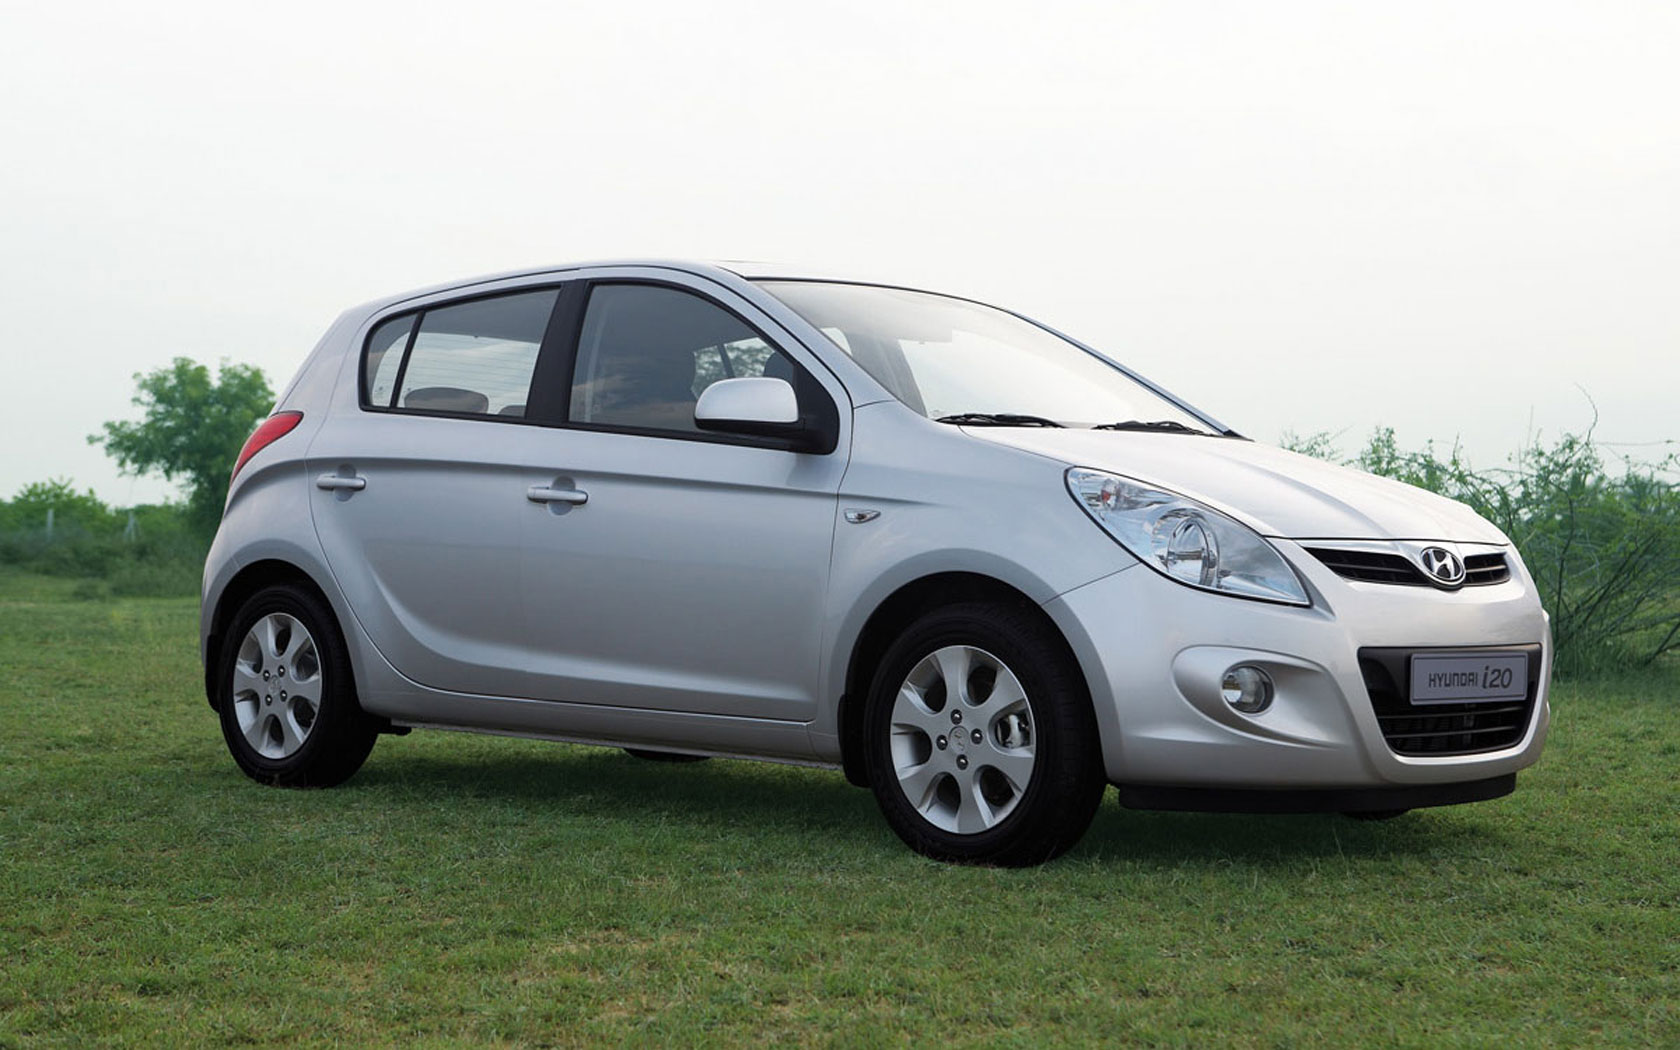  Hyundai i20 (2008-2012)